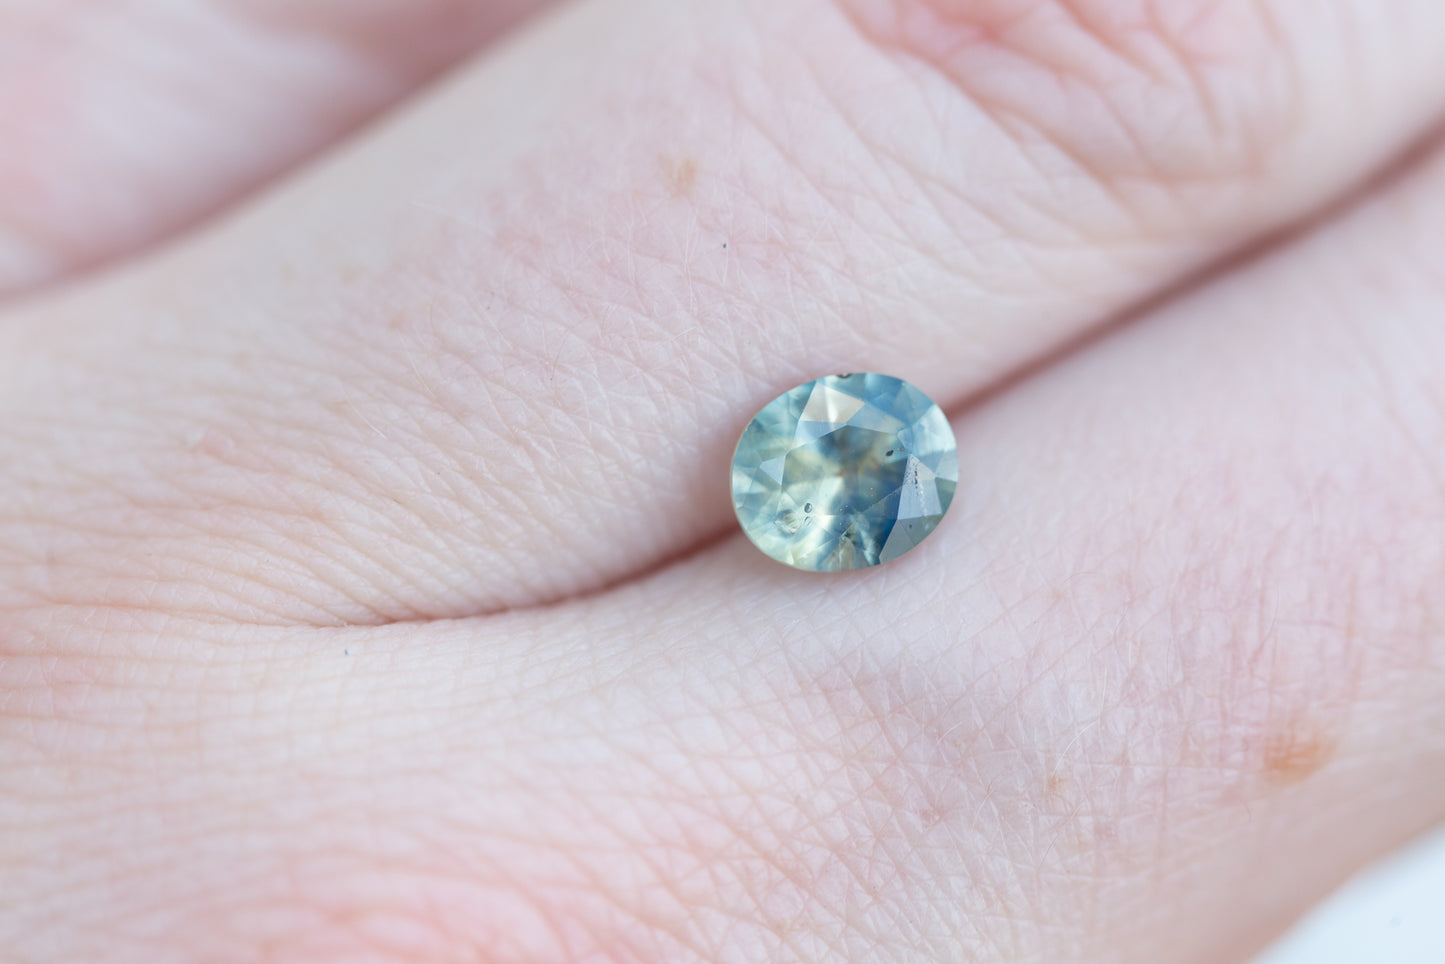 1.33ct oval murky opalescent light blue/teal sapphire